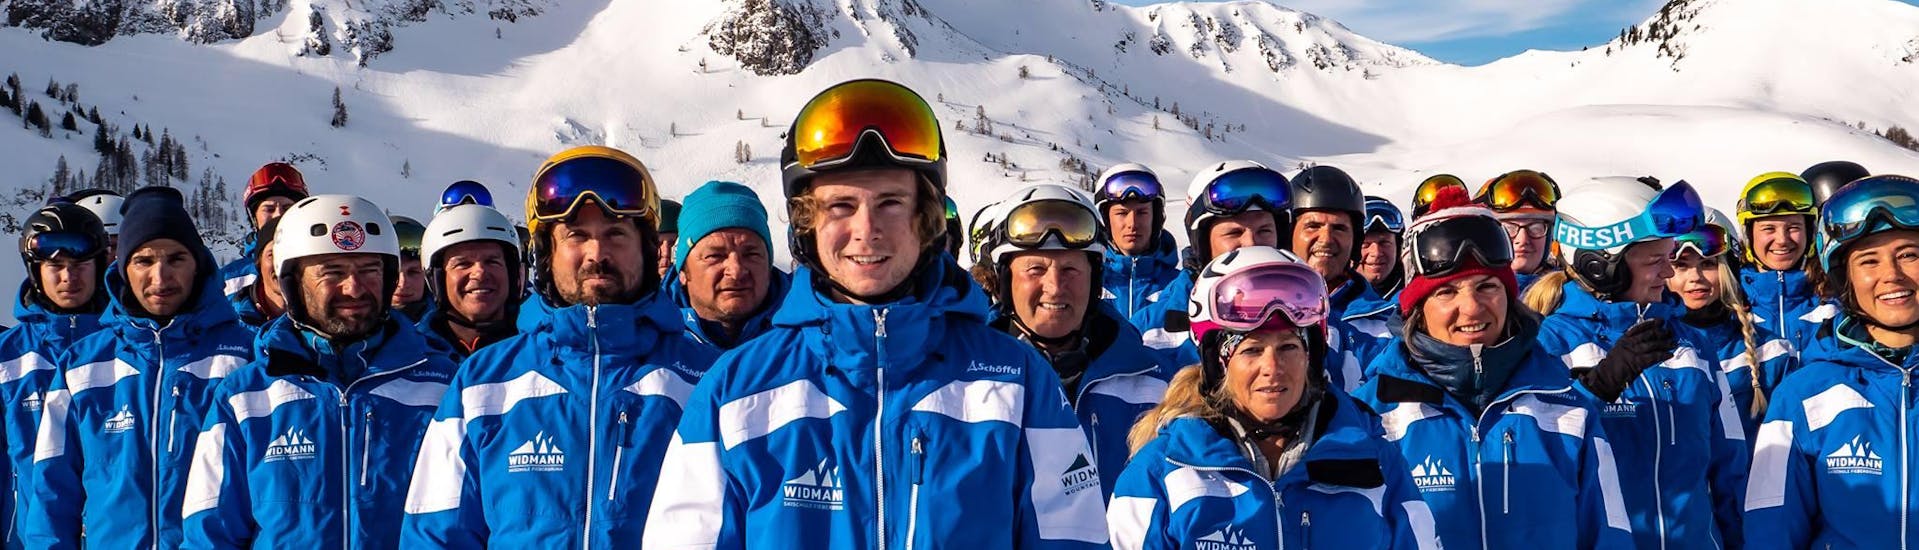 Die Skilehrer der Skischule Fieberbrunn Widmann Mountain Sports die unter anderem auch das Angebot Privater Skikurs für Erwachsene - Alle Levels unterrichten, posieren gemeinsam für ein Gruppenfoto.